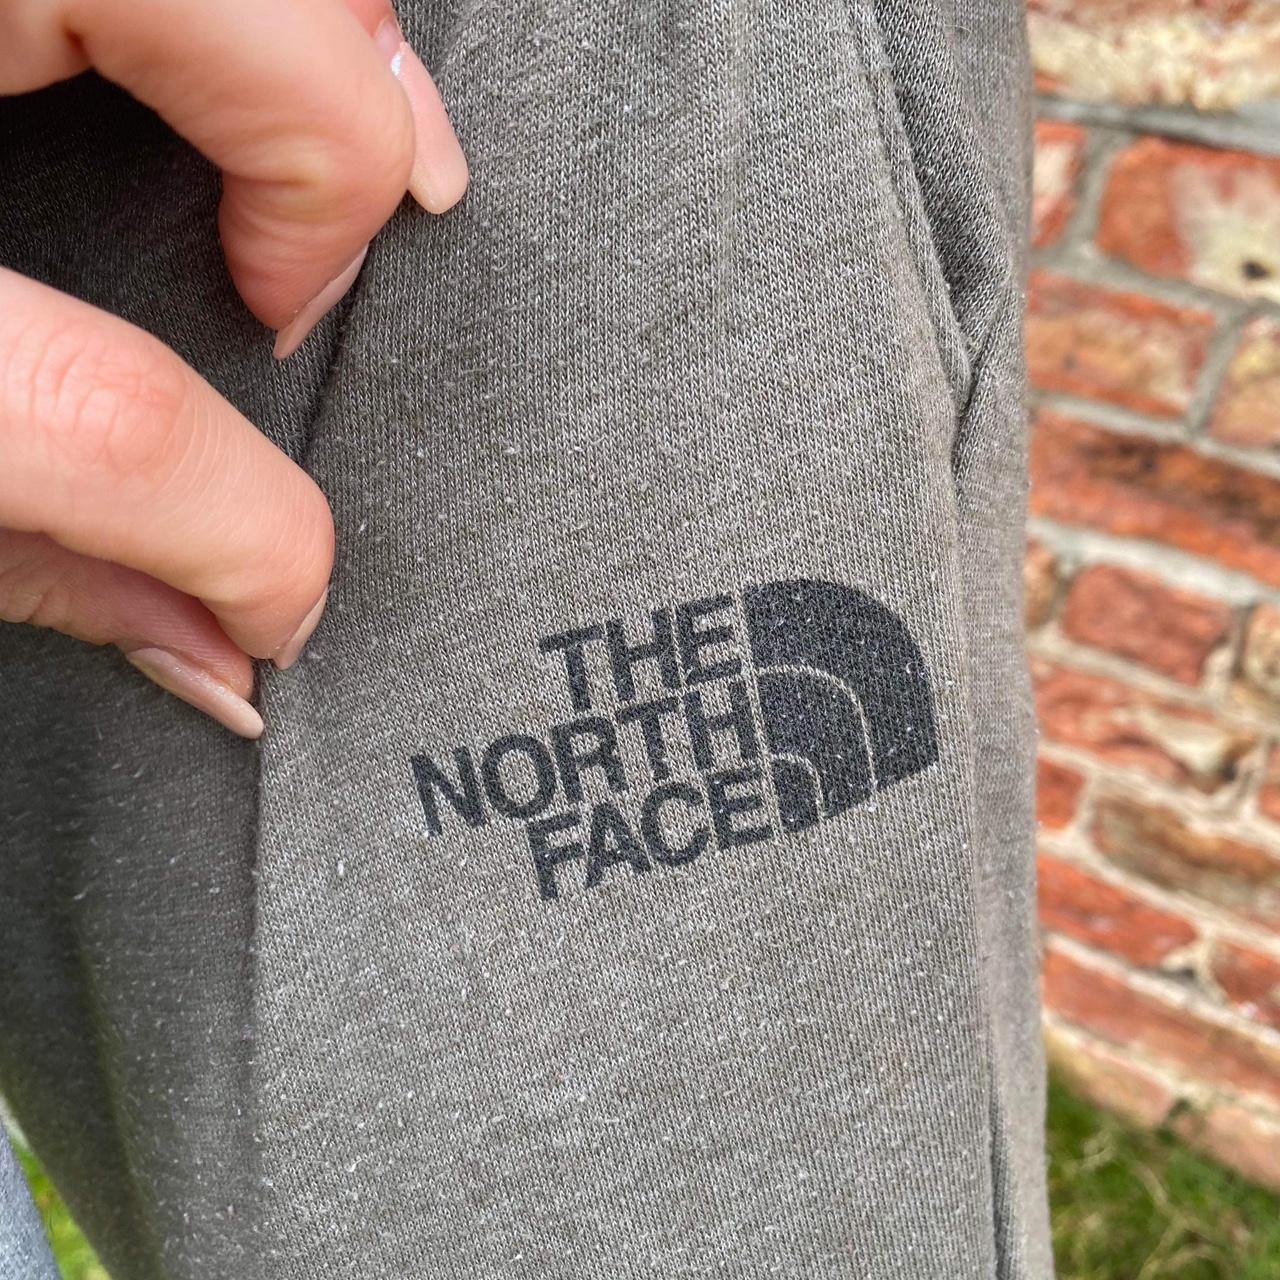 Vintage The North Face Swoosh Jogging Tracksuit... - Depop